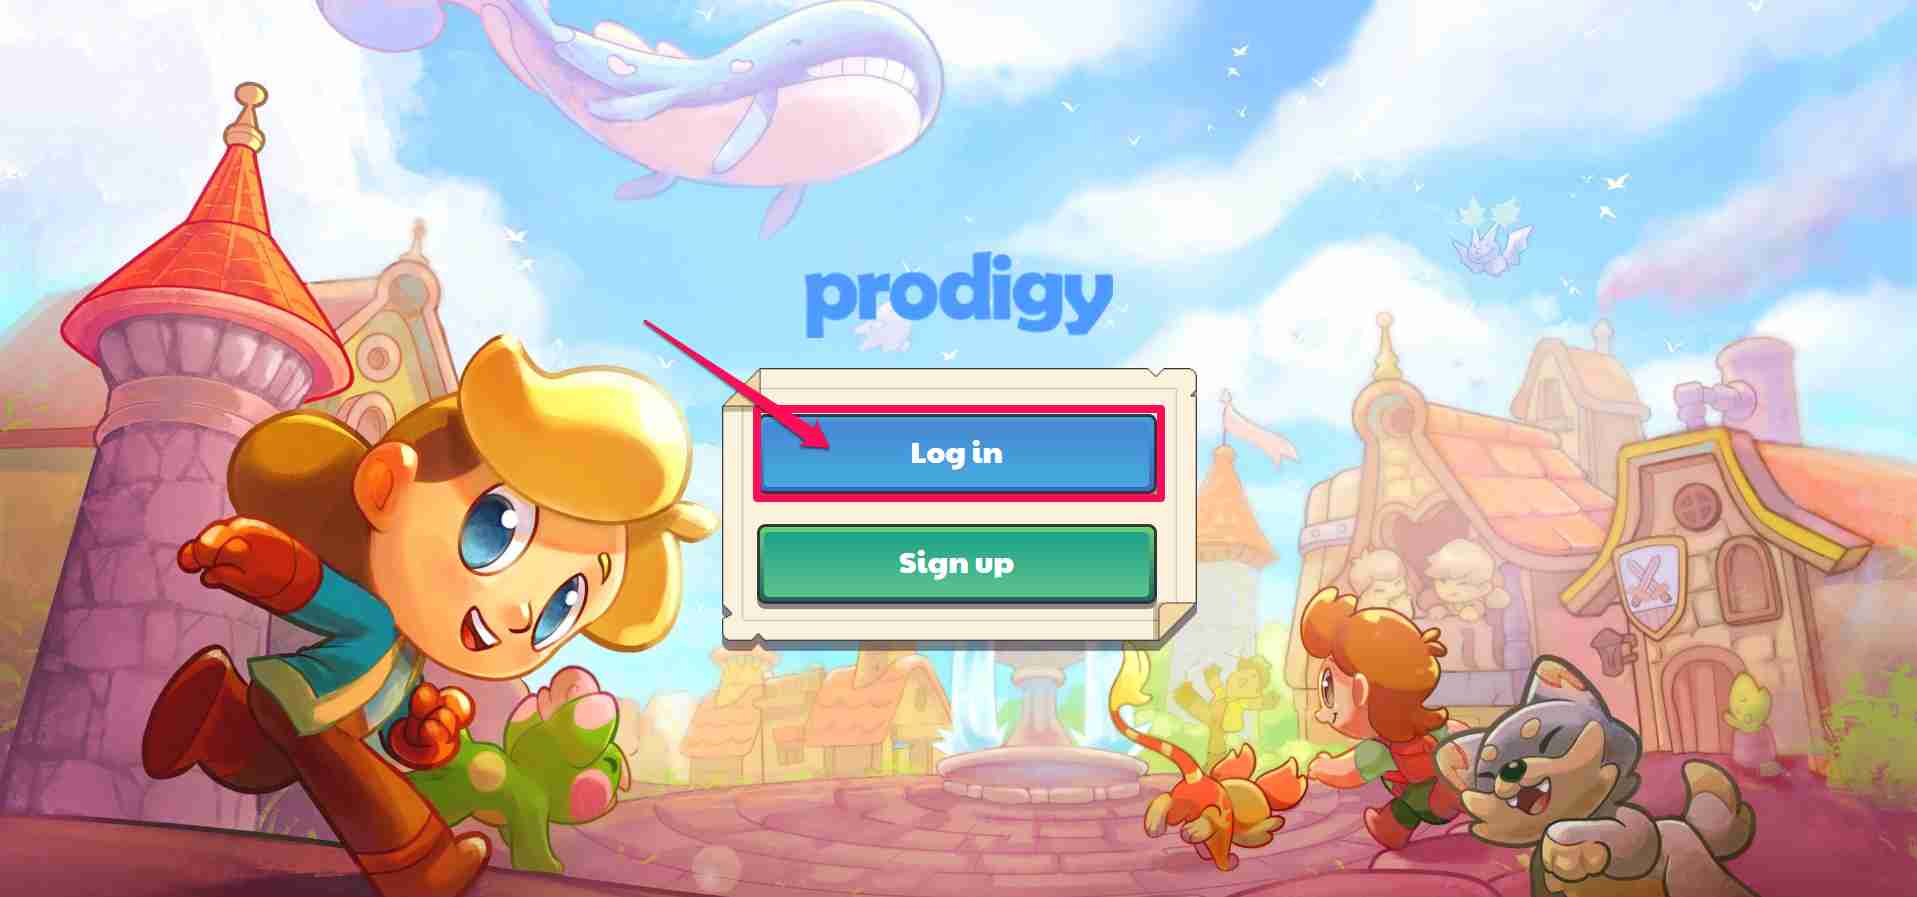 prodigy login menu